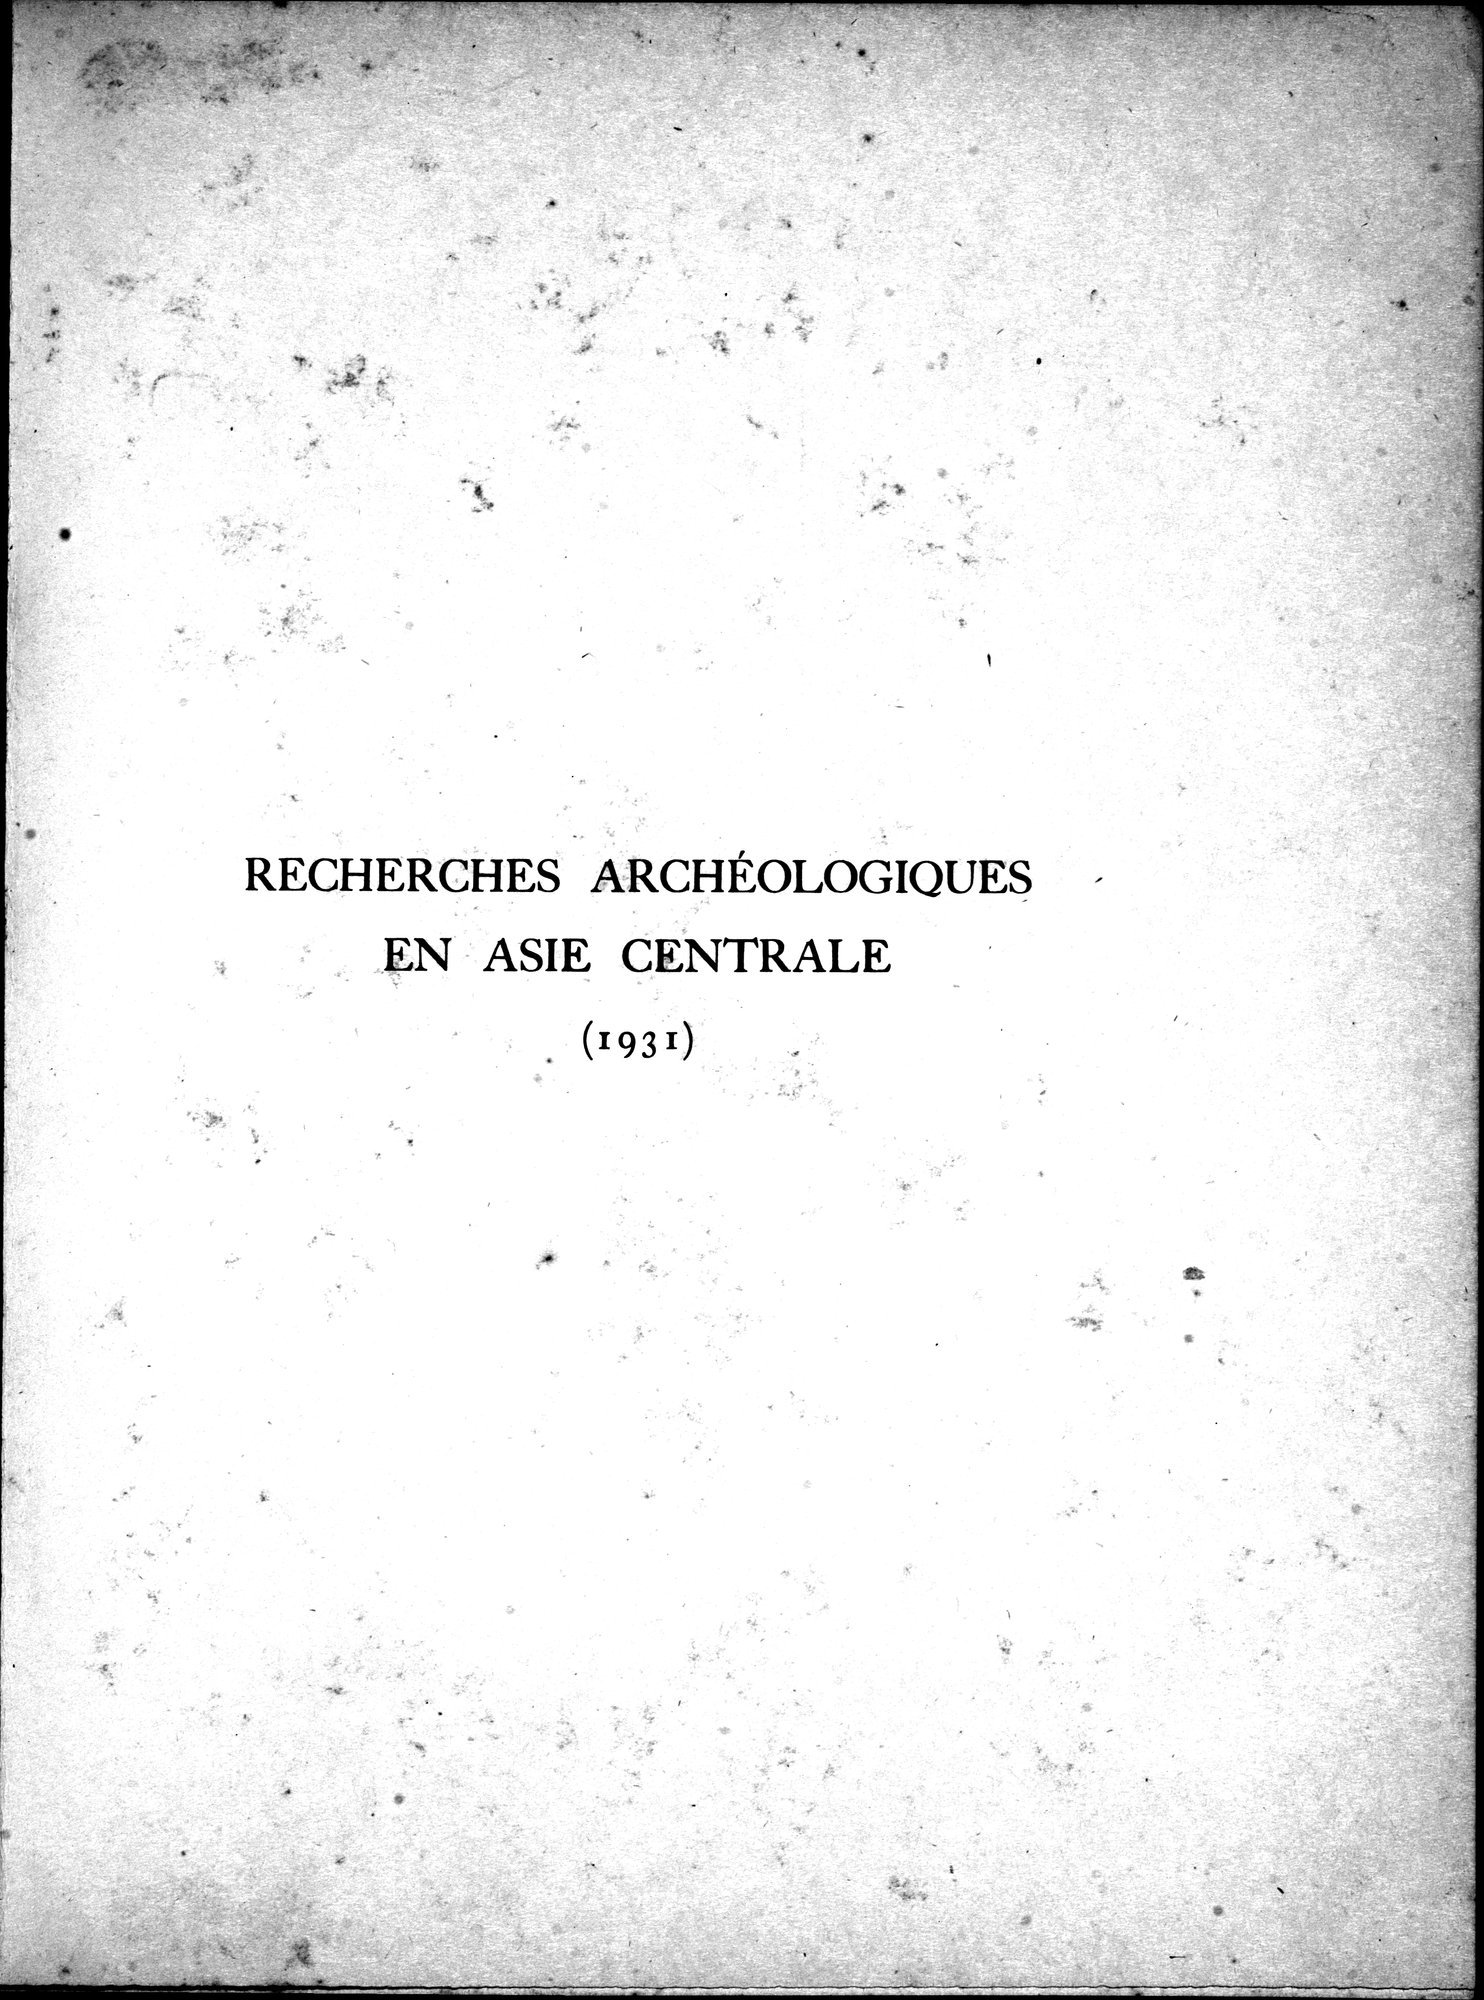 Recherches Archéologiques en Asie Centrale (1931) : vol.1 / Page 7 (Grayscale High Resolution Image)